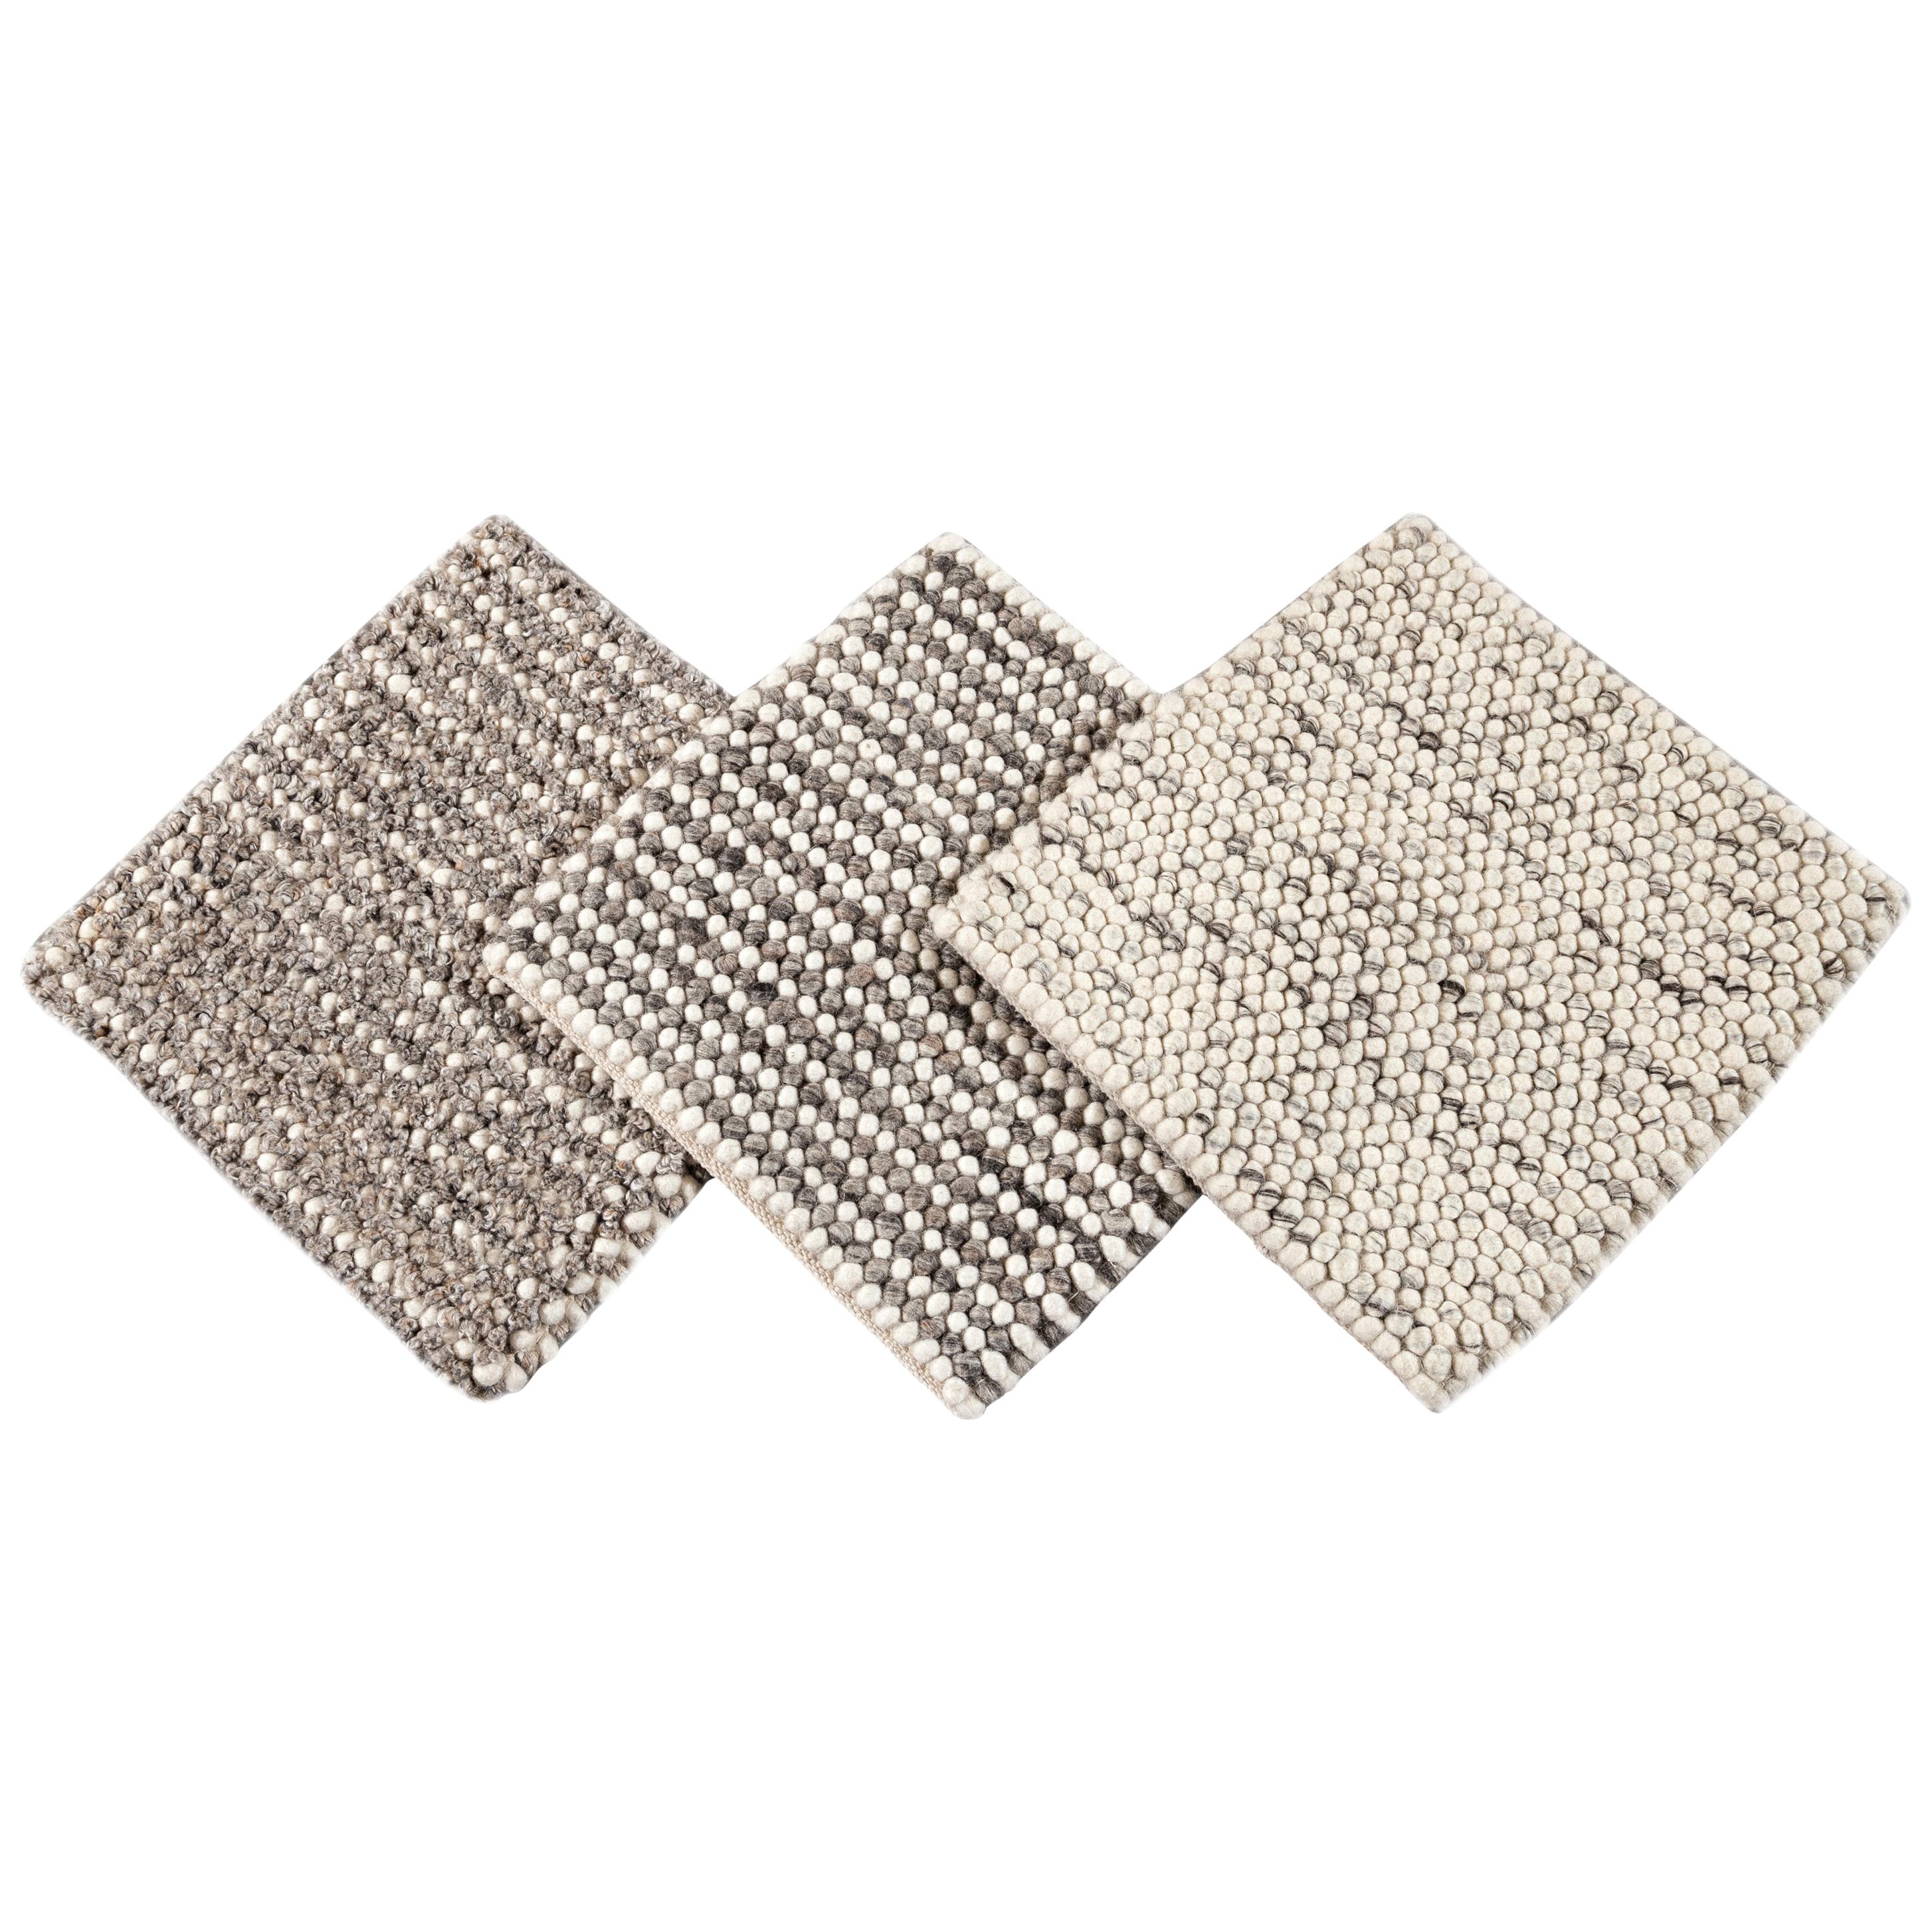 Easton Kollektion Handgewebter strukturierter Teppich aus Wolle